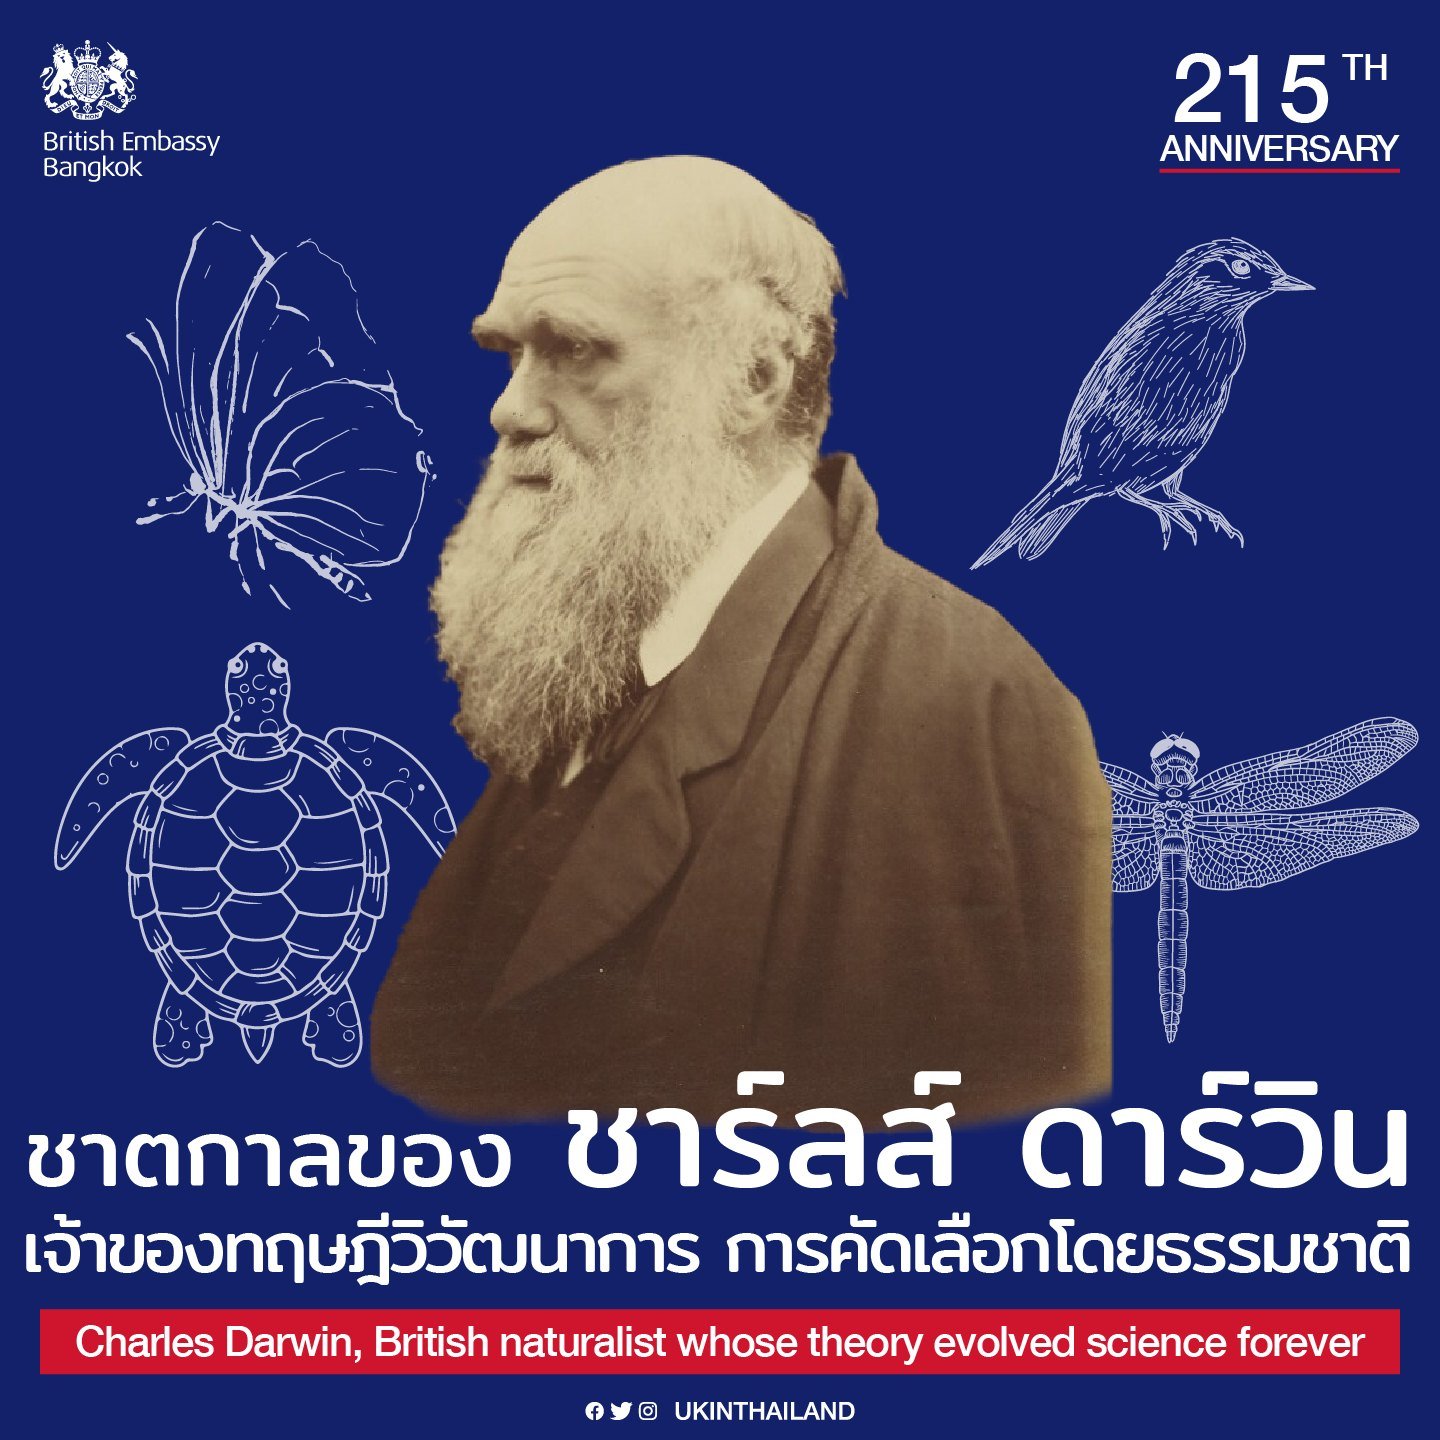 [Scroll down for English] วันนี้เป็นวันครบรอบ 215 ปีชาตกาลของ ชาร์ลส์ ดาร์วิน นักธรรมชาติวิทยาและนักธรณีวิทยาชาวสหราชอาณาจักร